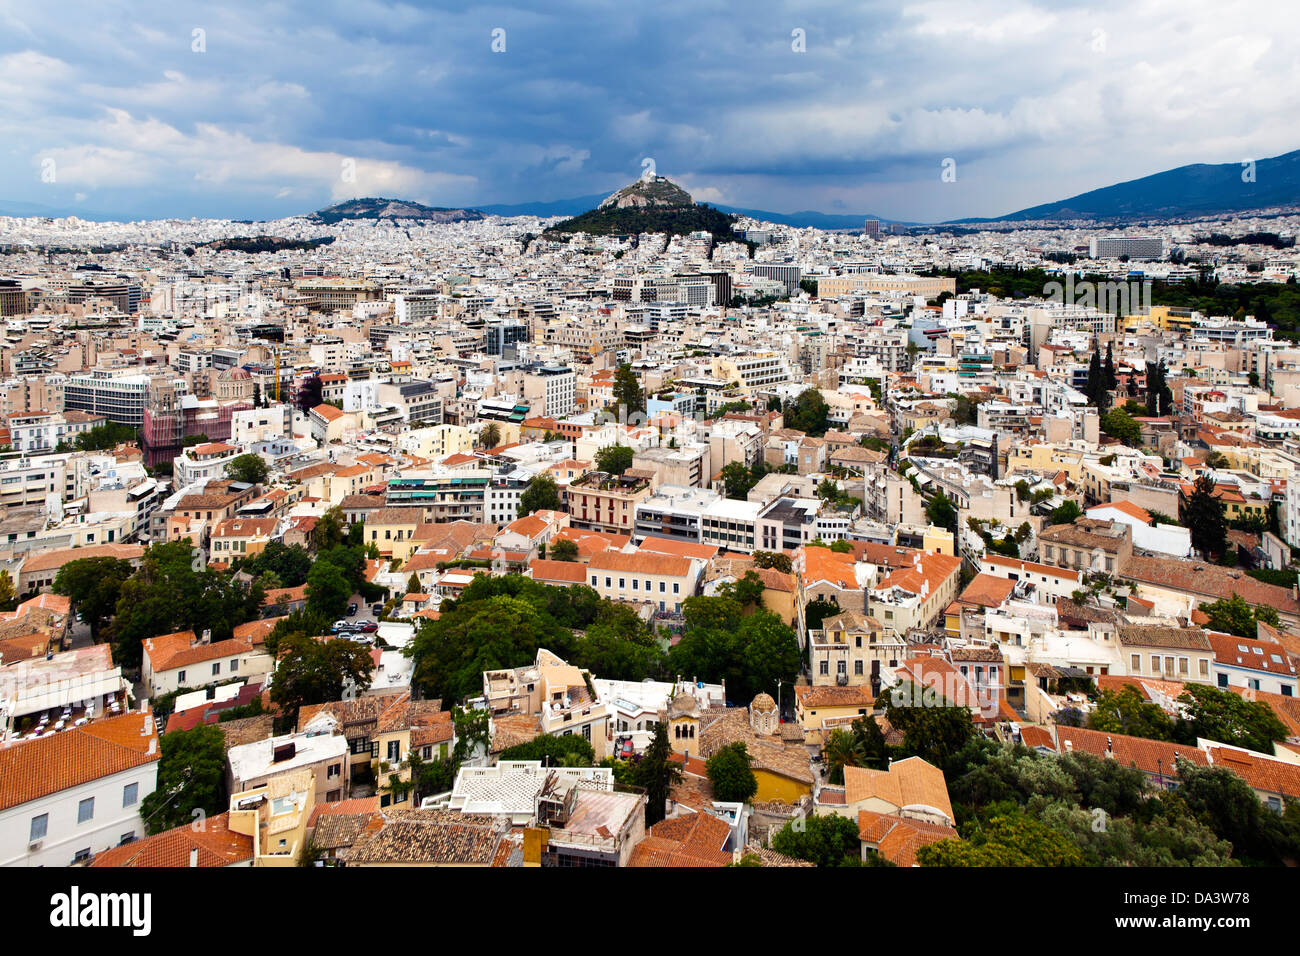 Un grand angle de vue d'Athènes - Grèce, prises de l'Acropole. Le mont Lycabette contraste fortement avec son environnement urbain Banque D'Images